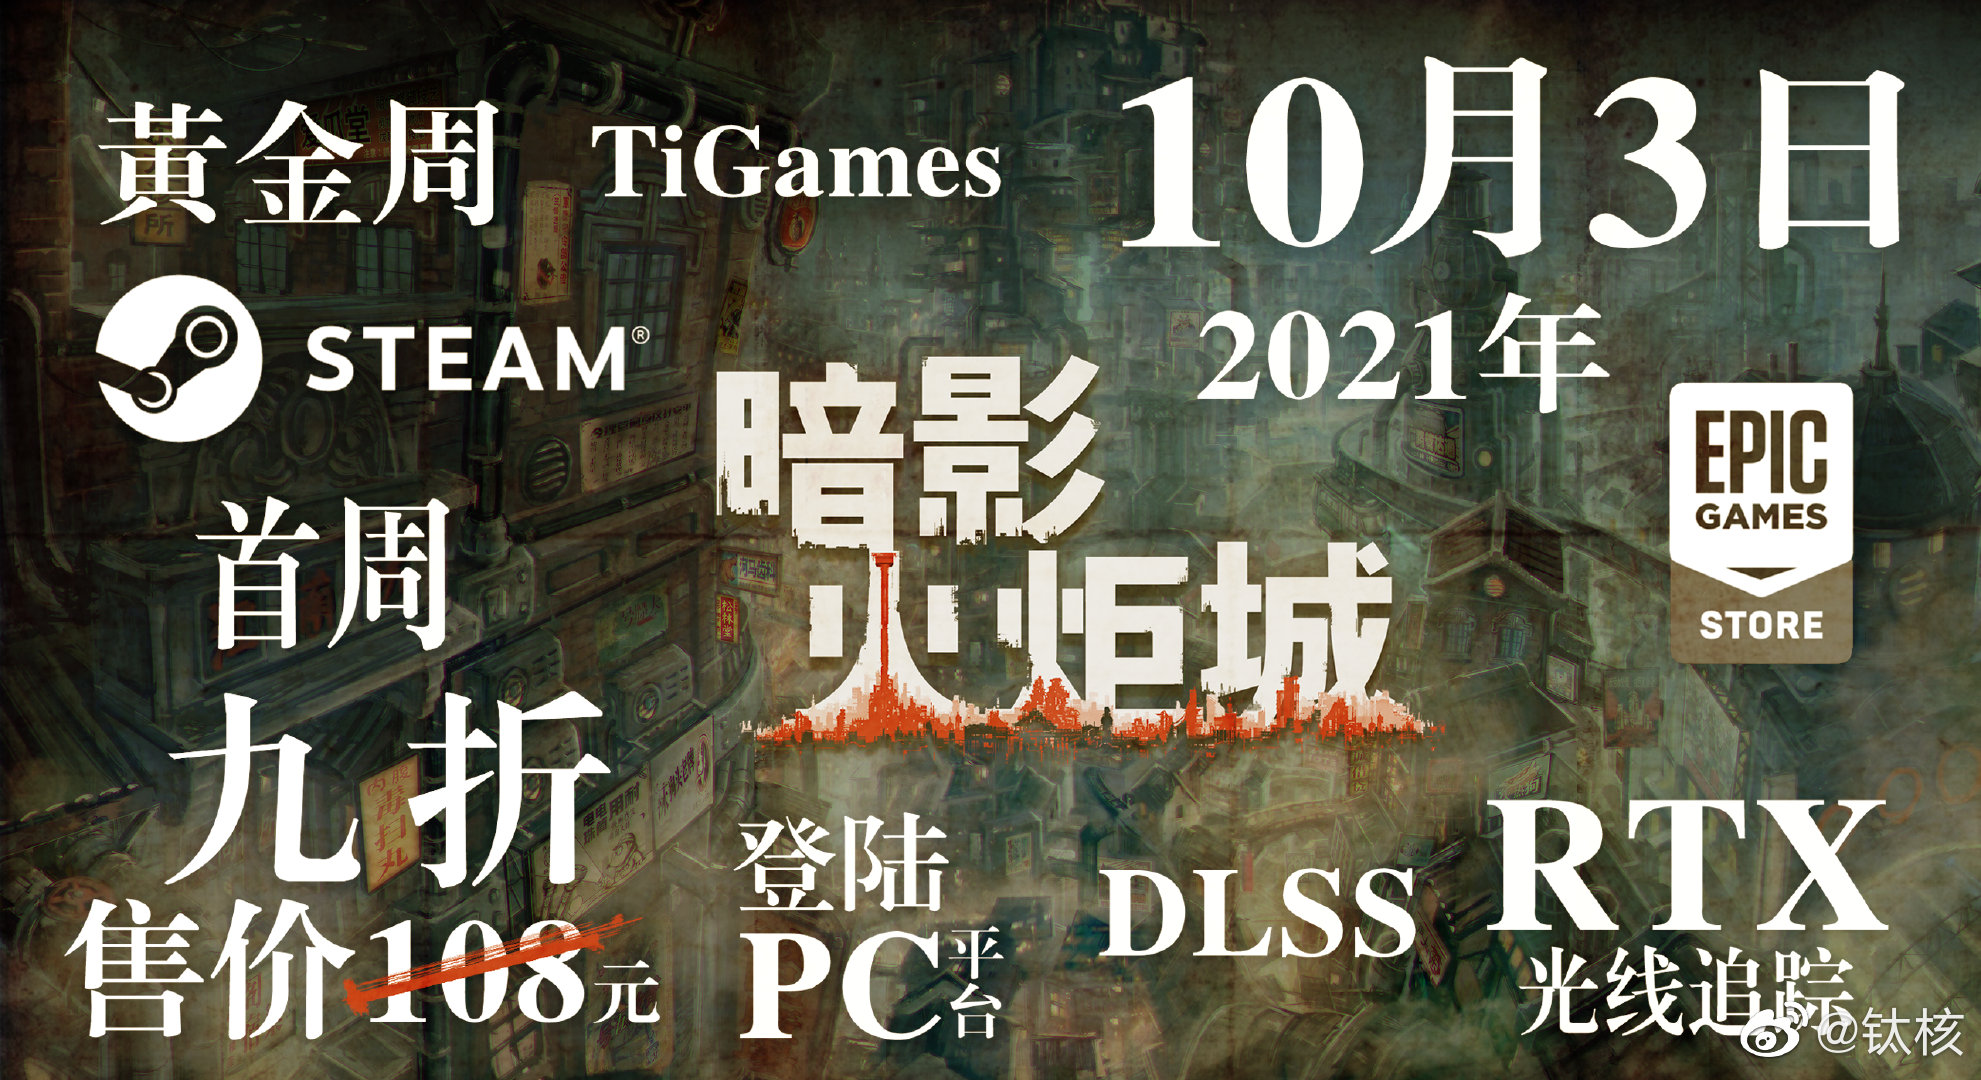 《暗影火炬城》PC版10月3日发售 支持DLSS和光追